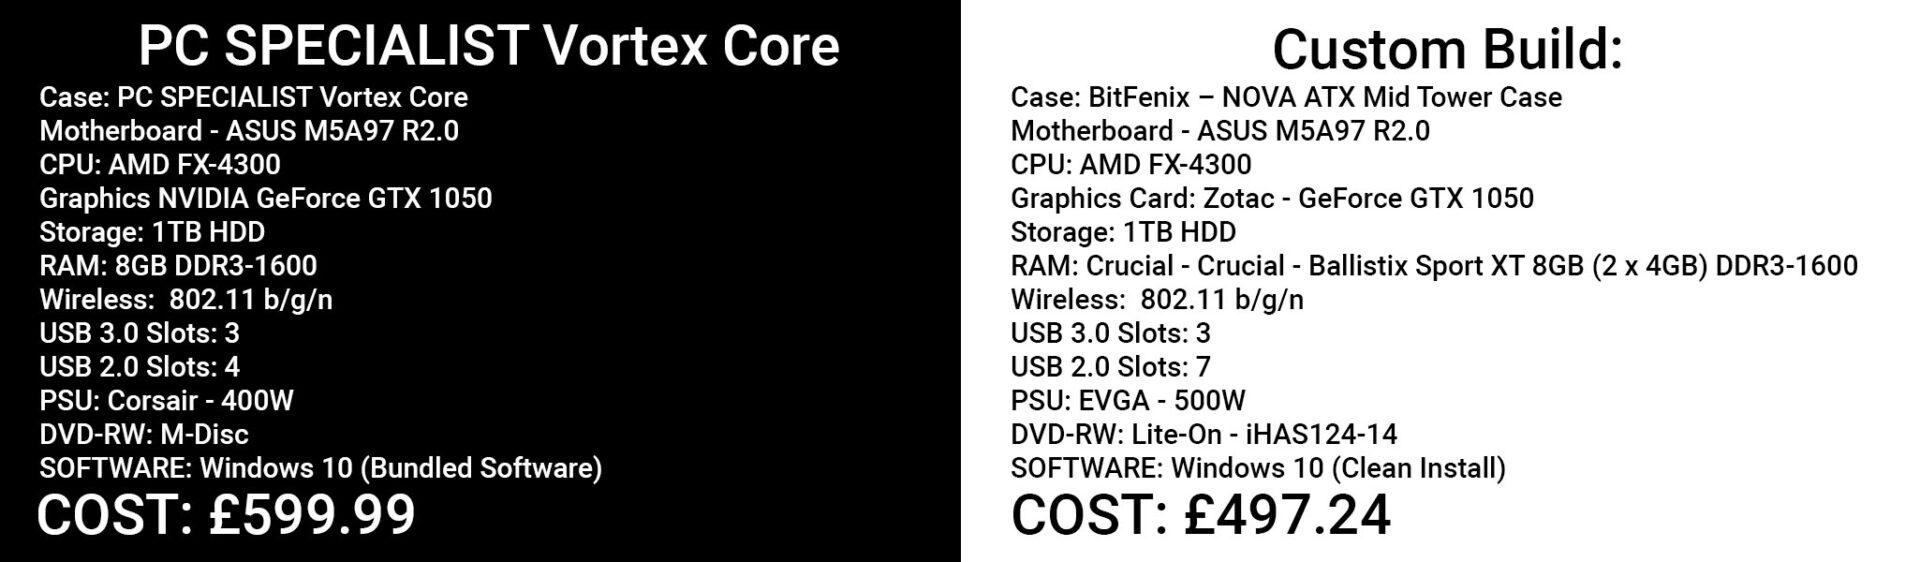 PC Specialist Vortex Core compared to Custom build